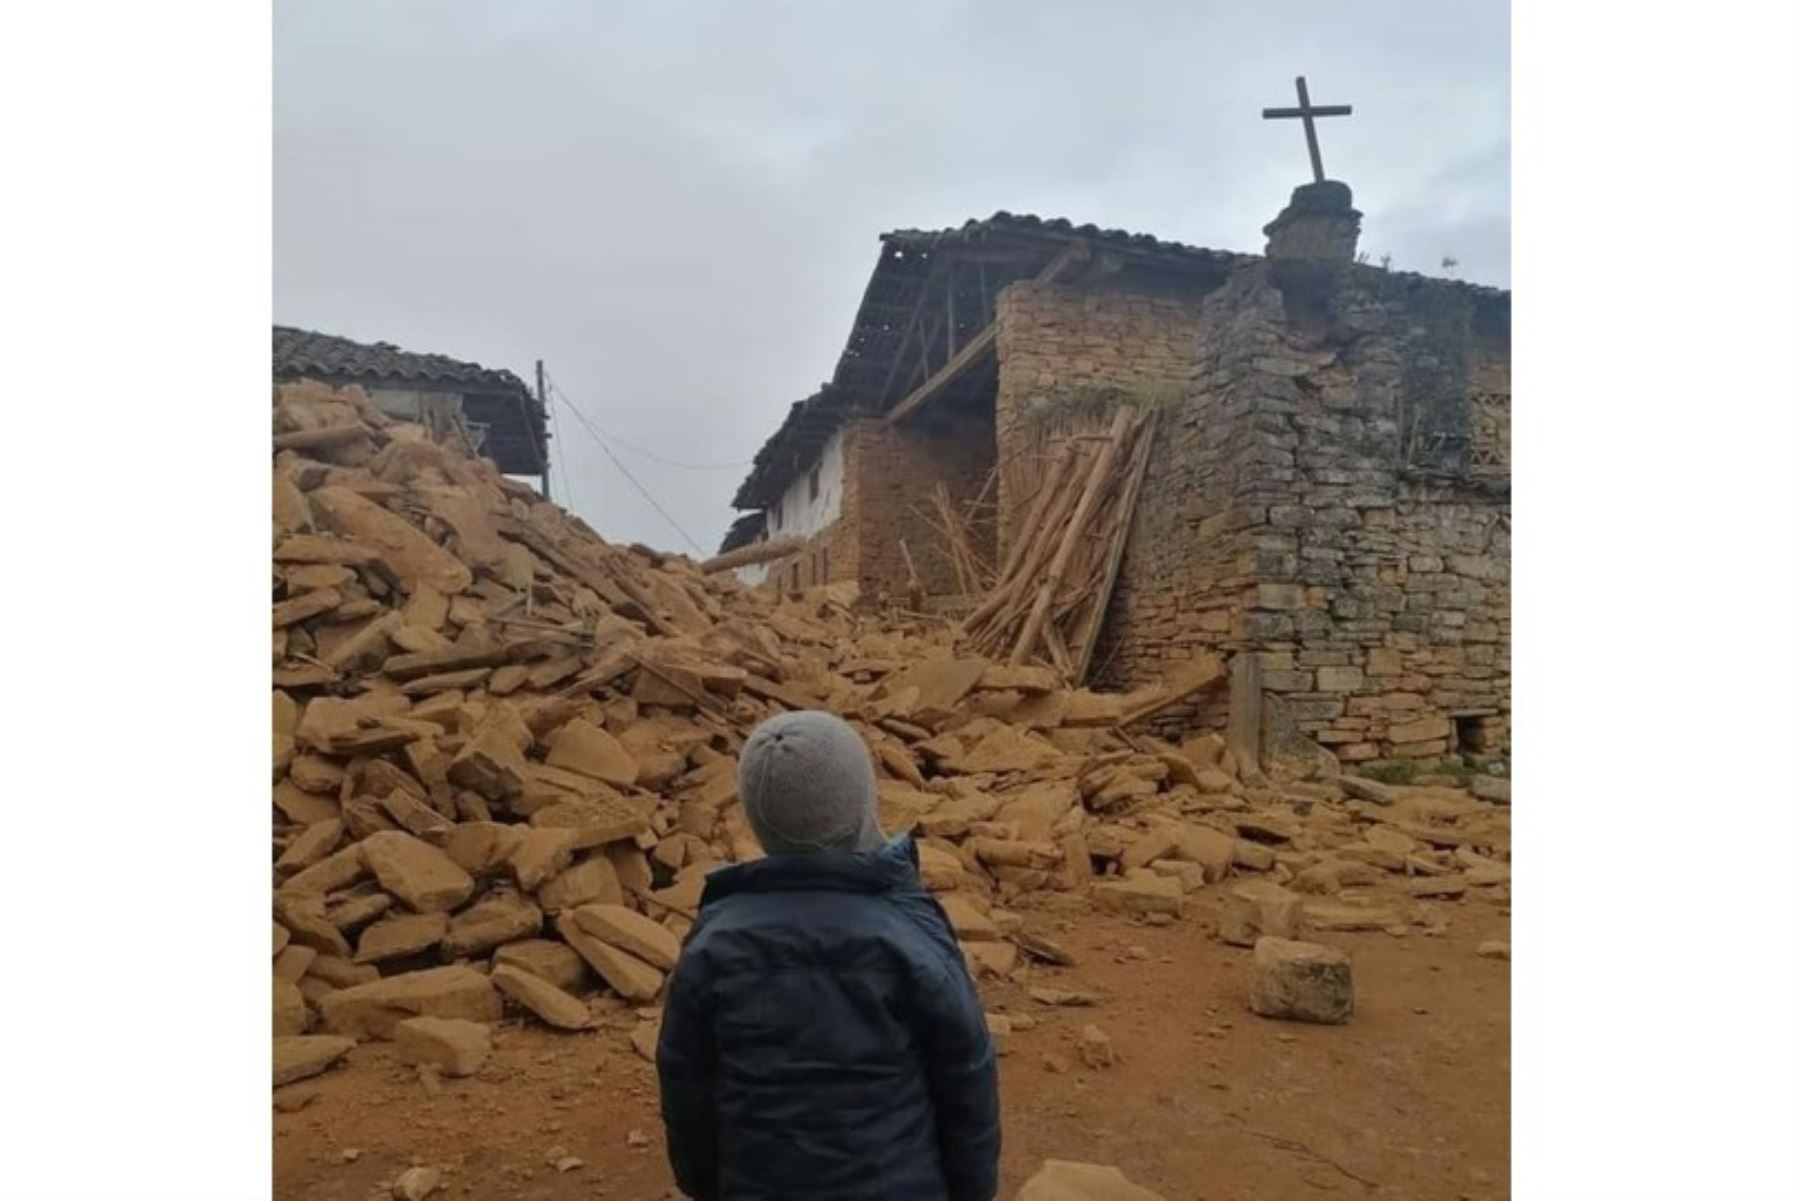 La agencia española AECI intervendrá en la recuperación de la torre de la iglesia La Jalca Grande, que resultó seriamente afectada por el fuerte sismo de magnitud 7.5 registrado a fines de noviembre en Amazonas. Foto: Facebook.